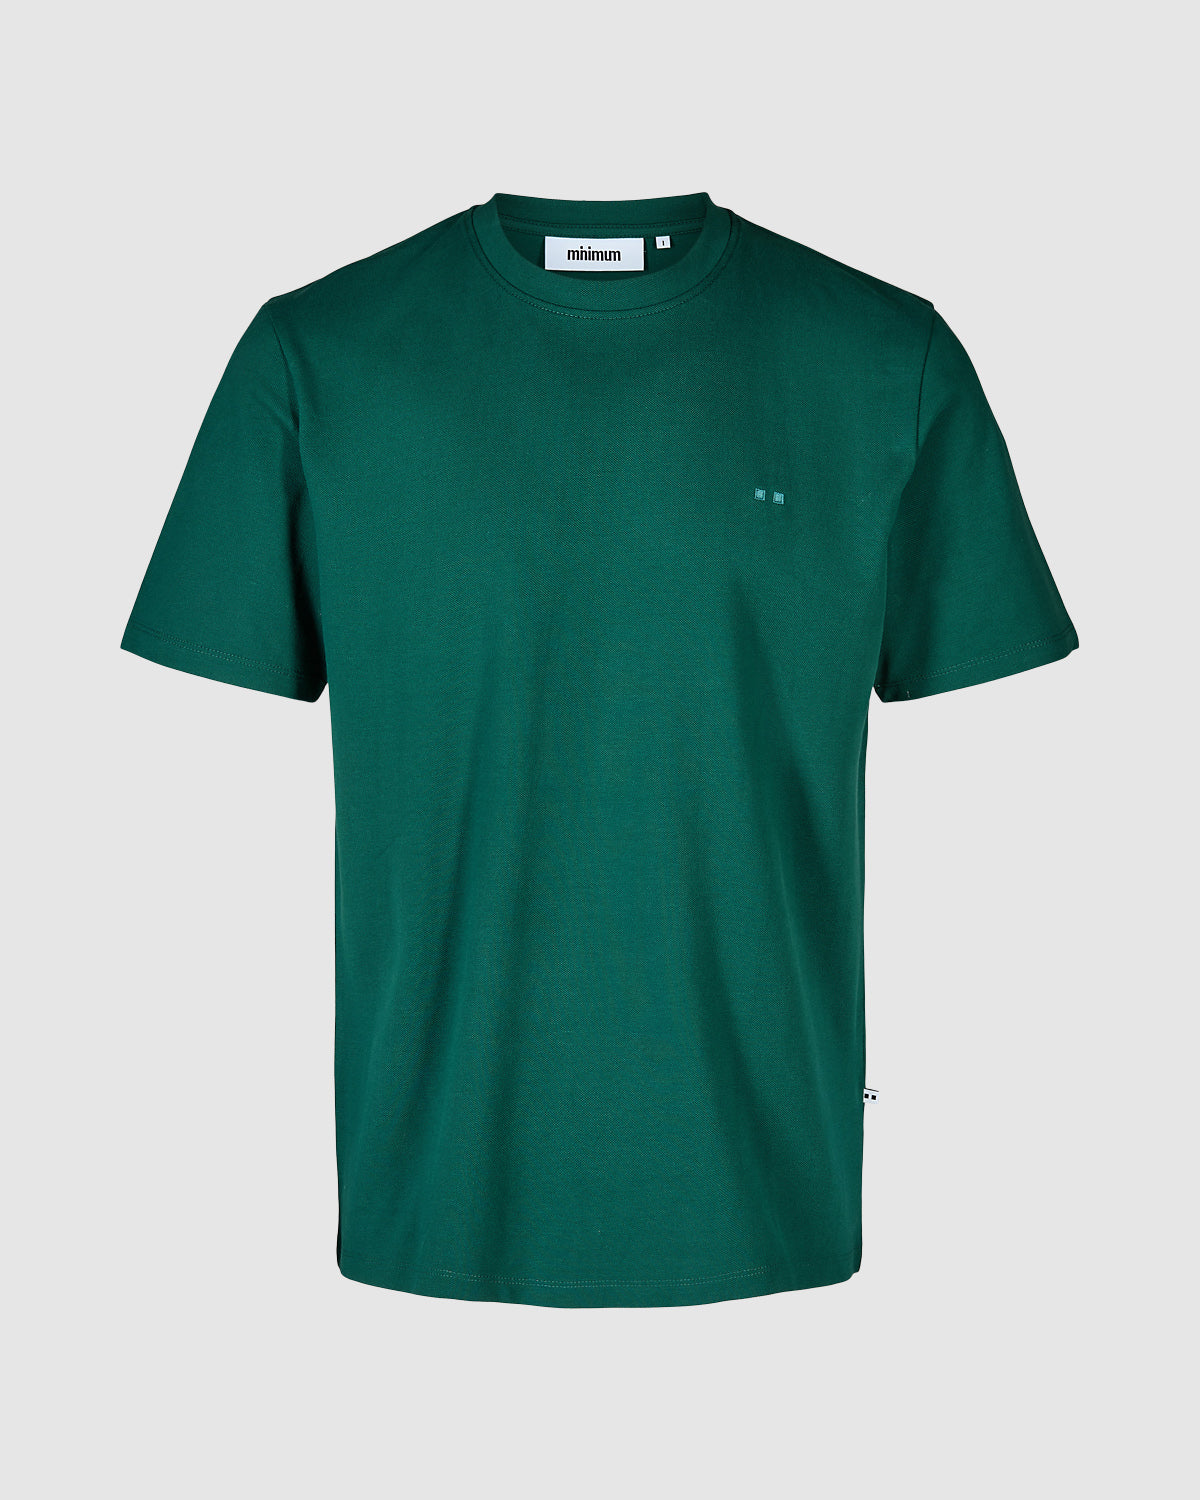 Minimum - Sims 2.0 Short Sleeve T-Shirt